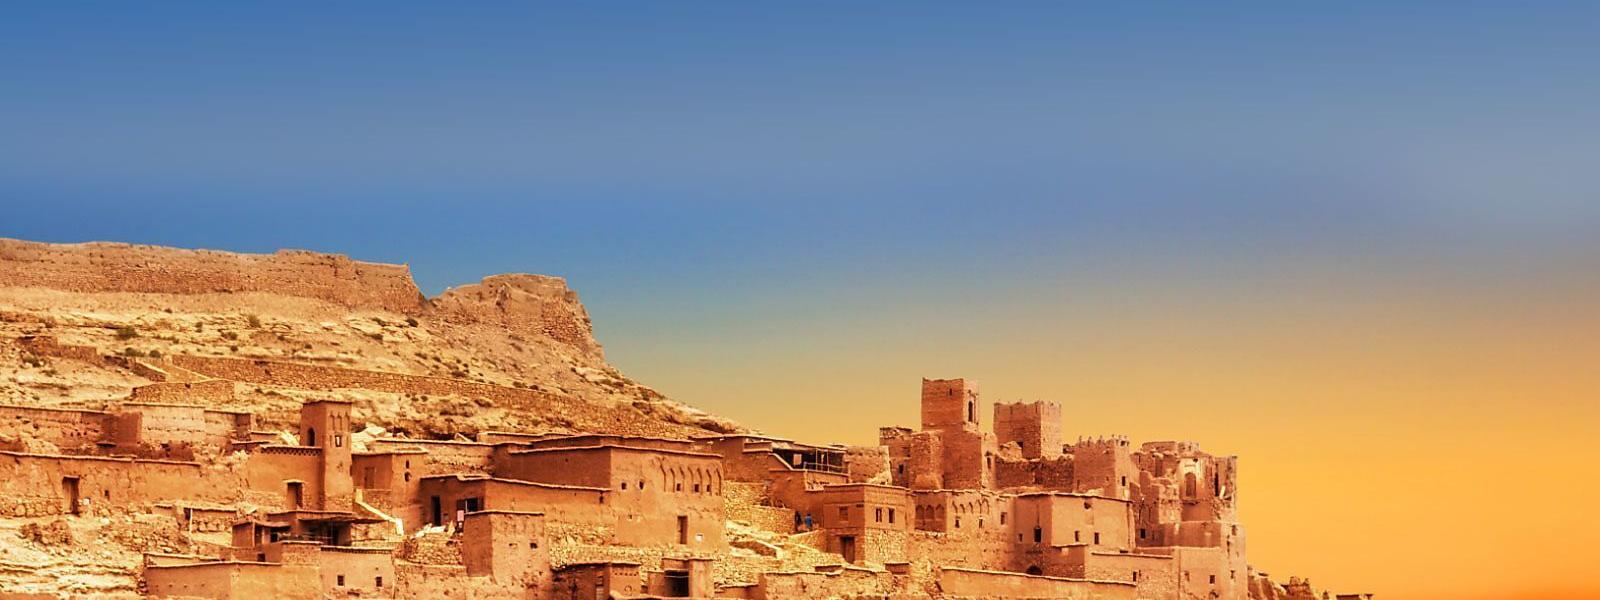 Ferienhäuser und Ferienwohnungen in Marokko - e-domizil